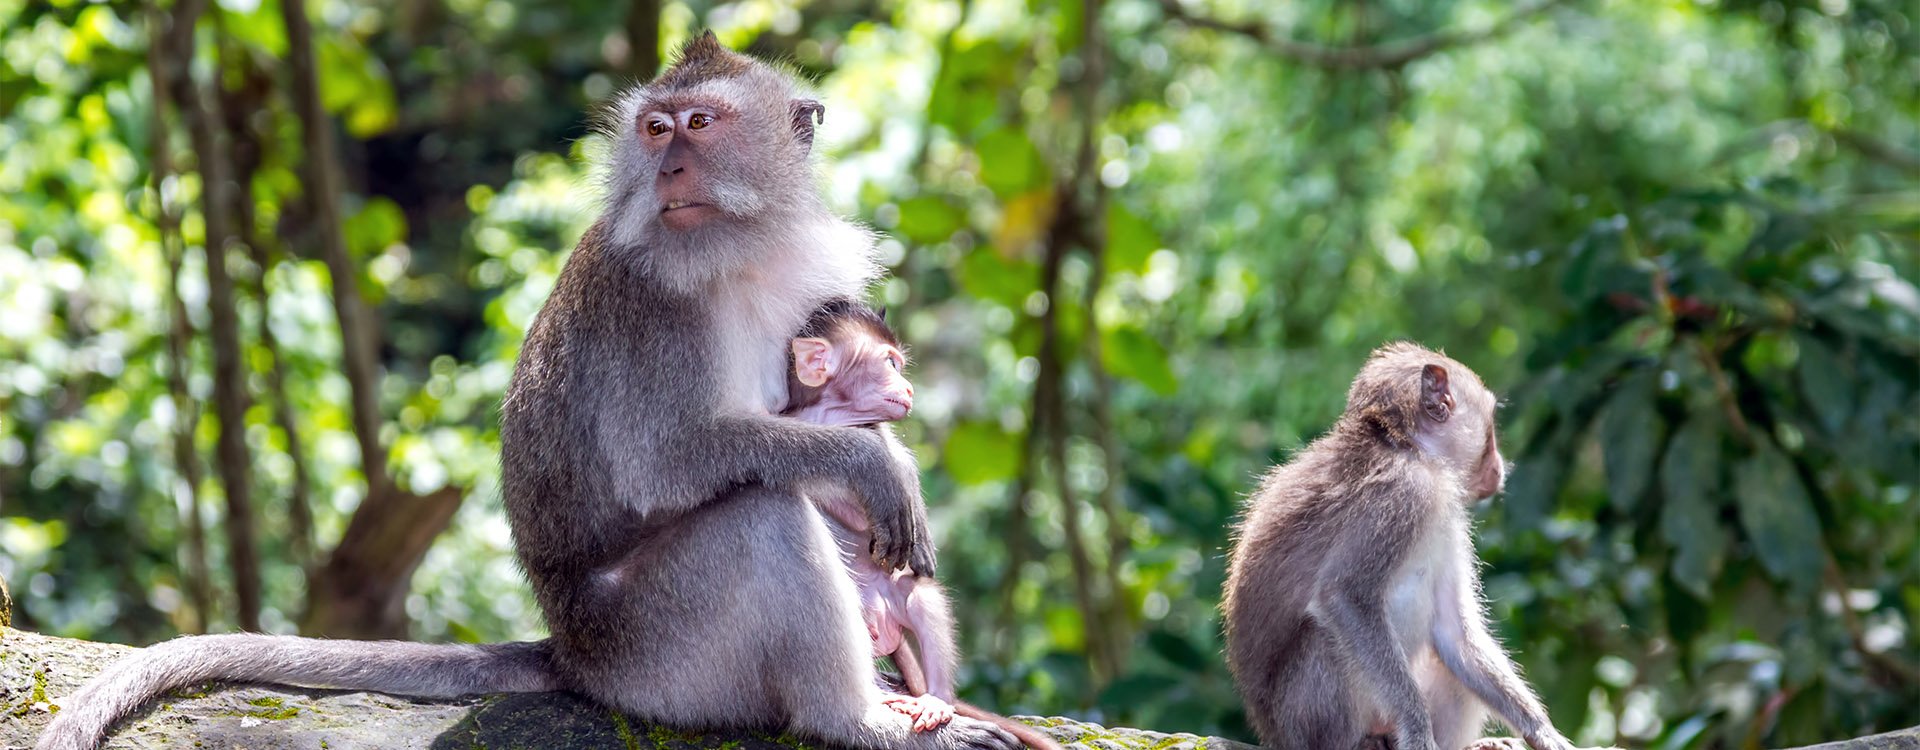 Monkey family at sacred monkey forest Ubud Bali Indonesia